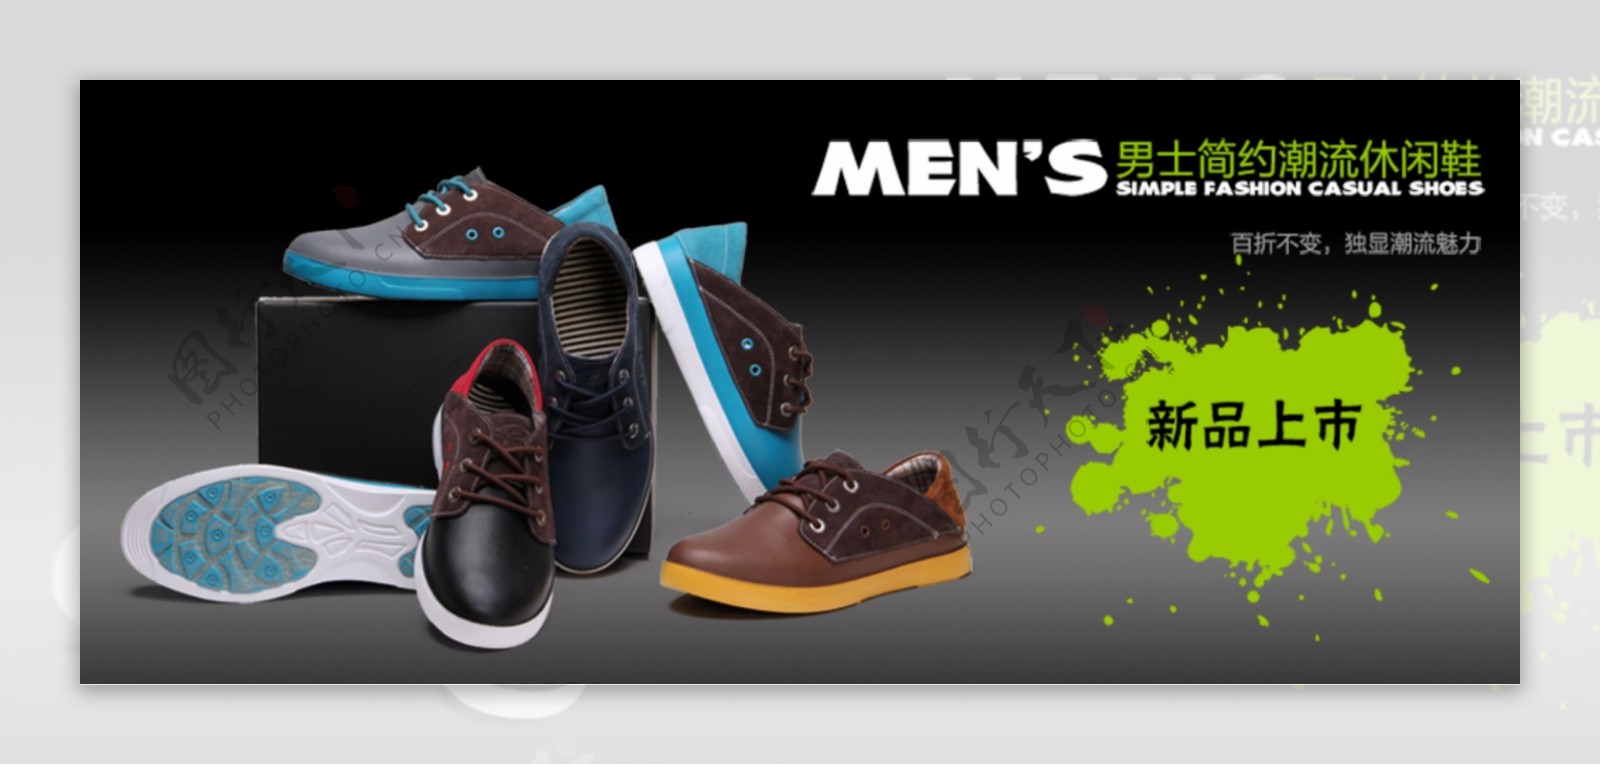 男士平底运动鞋新品上市海报